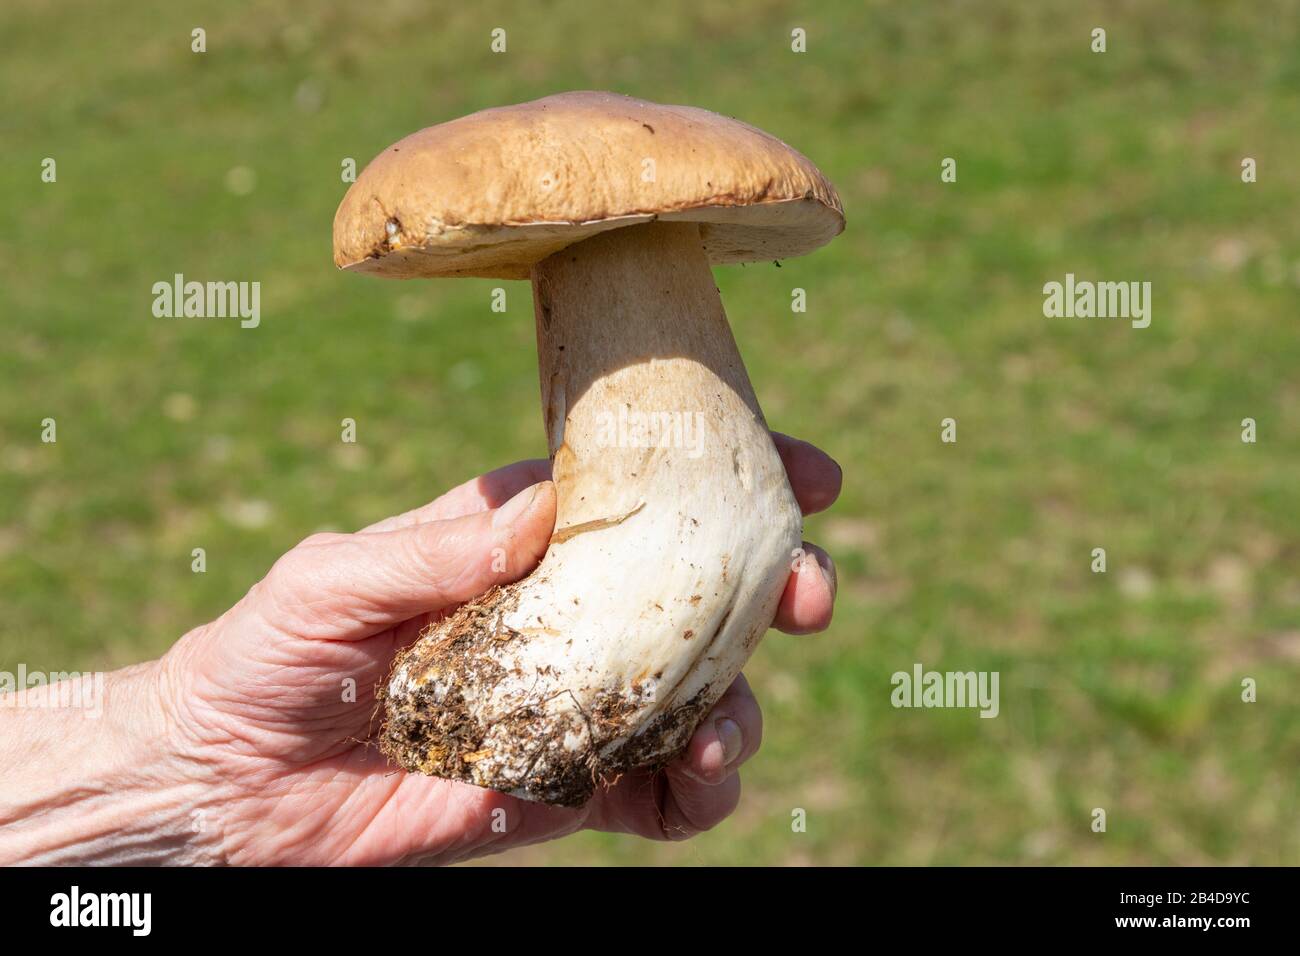 Cep mushroom genus Dickröhrlinge (Boletus) Stock Photo